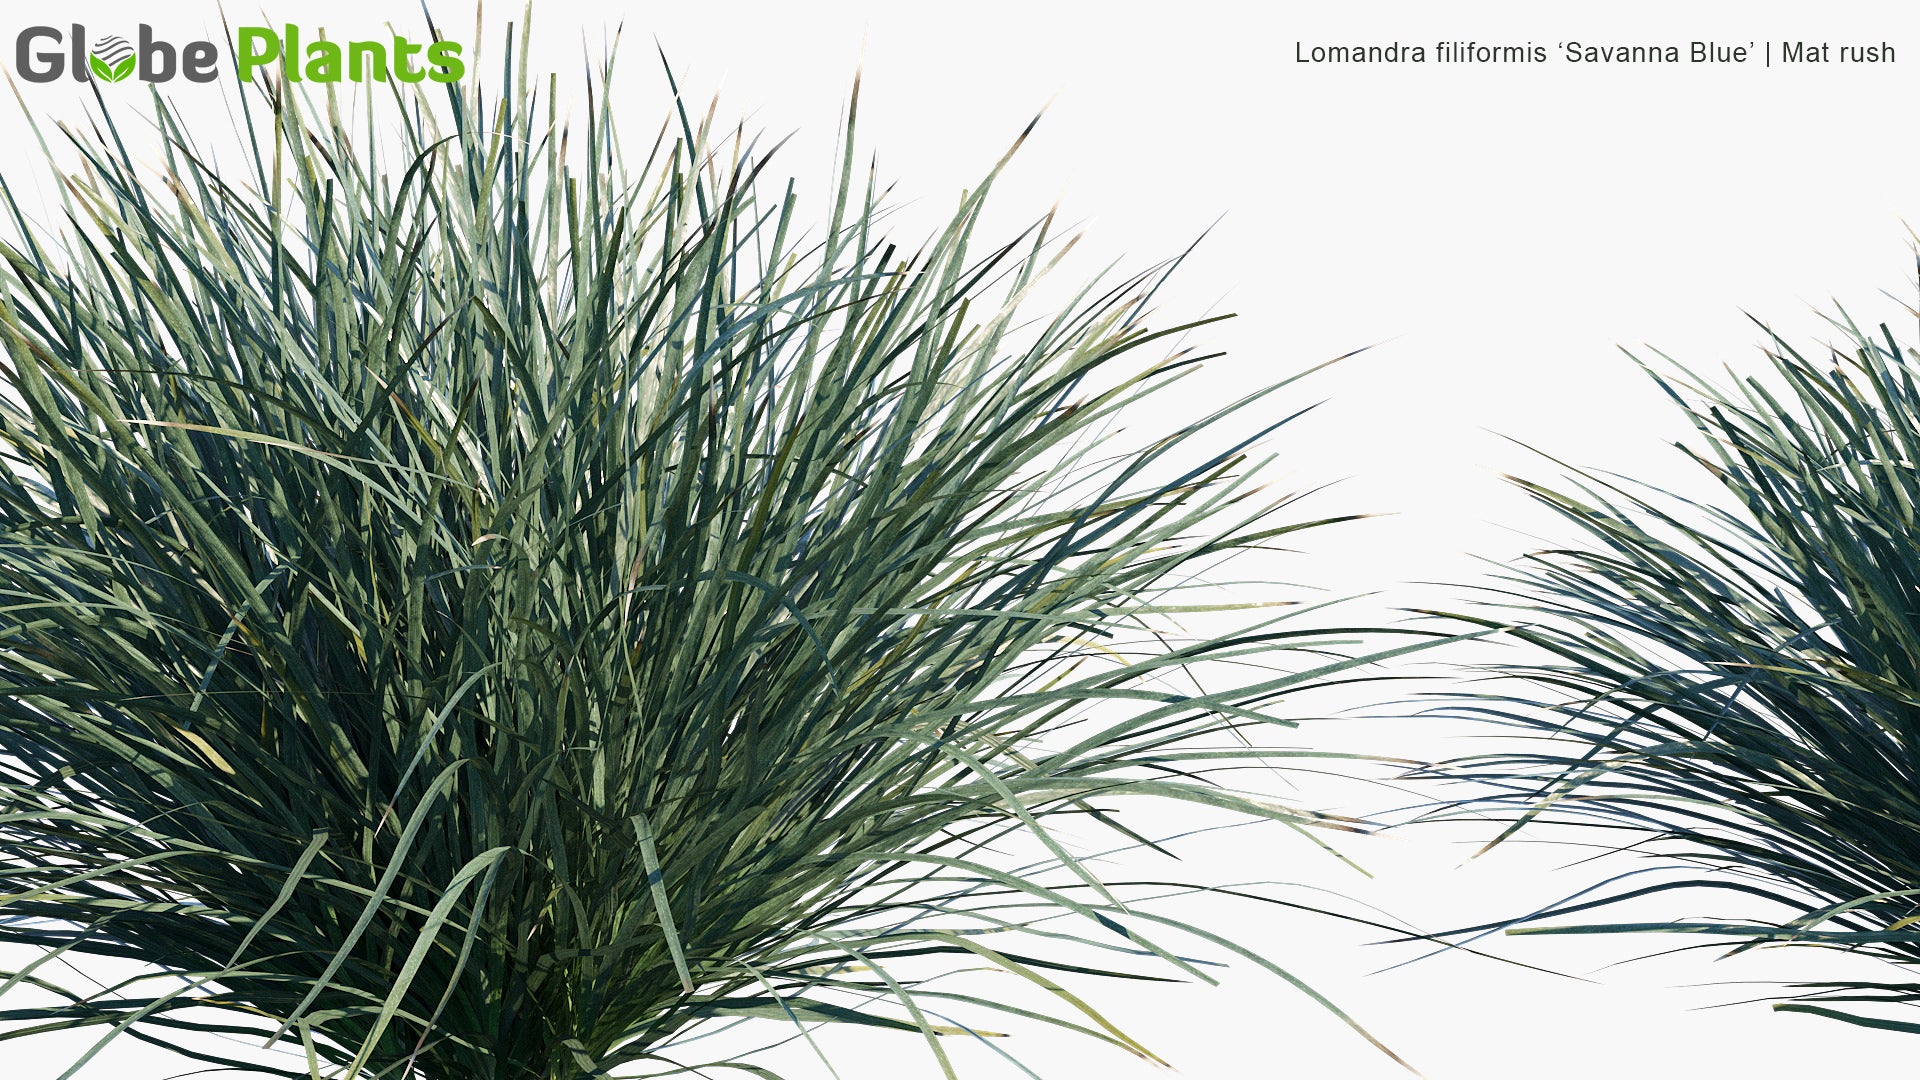 Lomandra Filiformis 'Savanna Blue' - Mat Rush